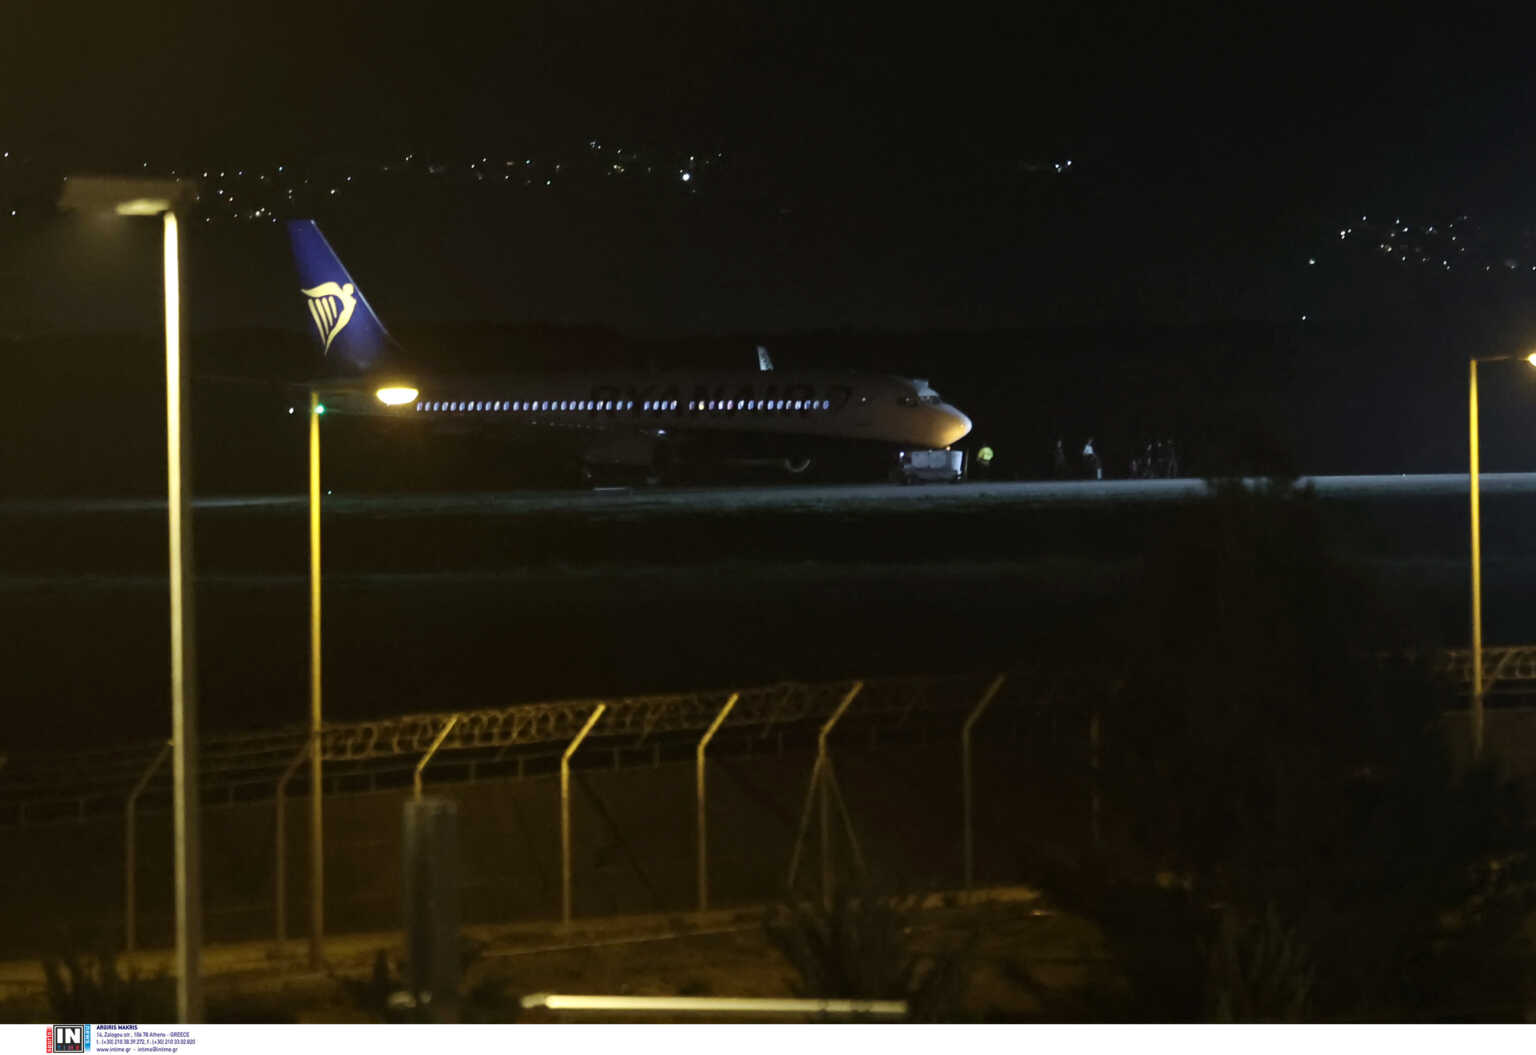 Οι πρώτες εικόνες από το «Ελ. Βενιζέλος» – Εκκενώνεται το αεροπλάνο που έστειλε σήμα για βόμβα